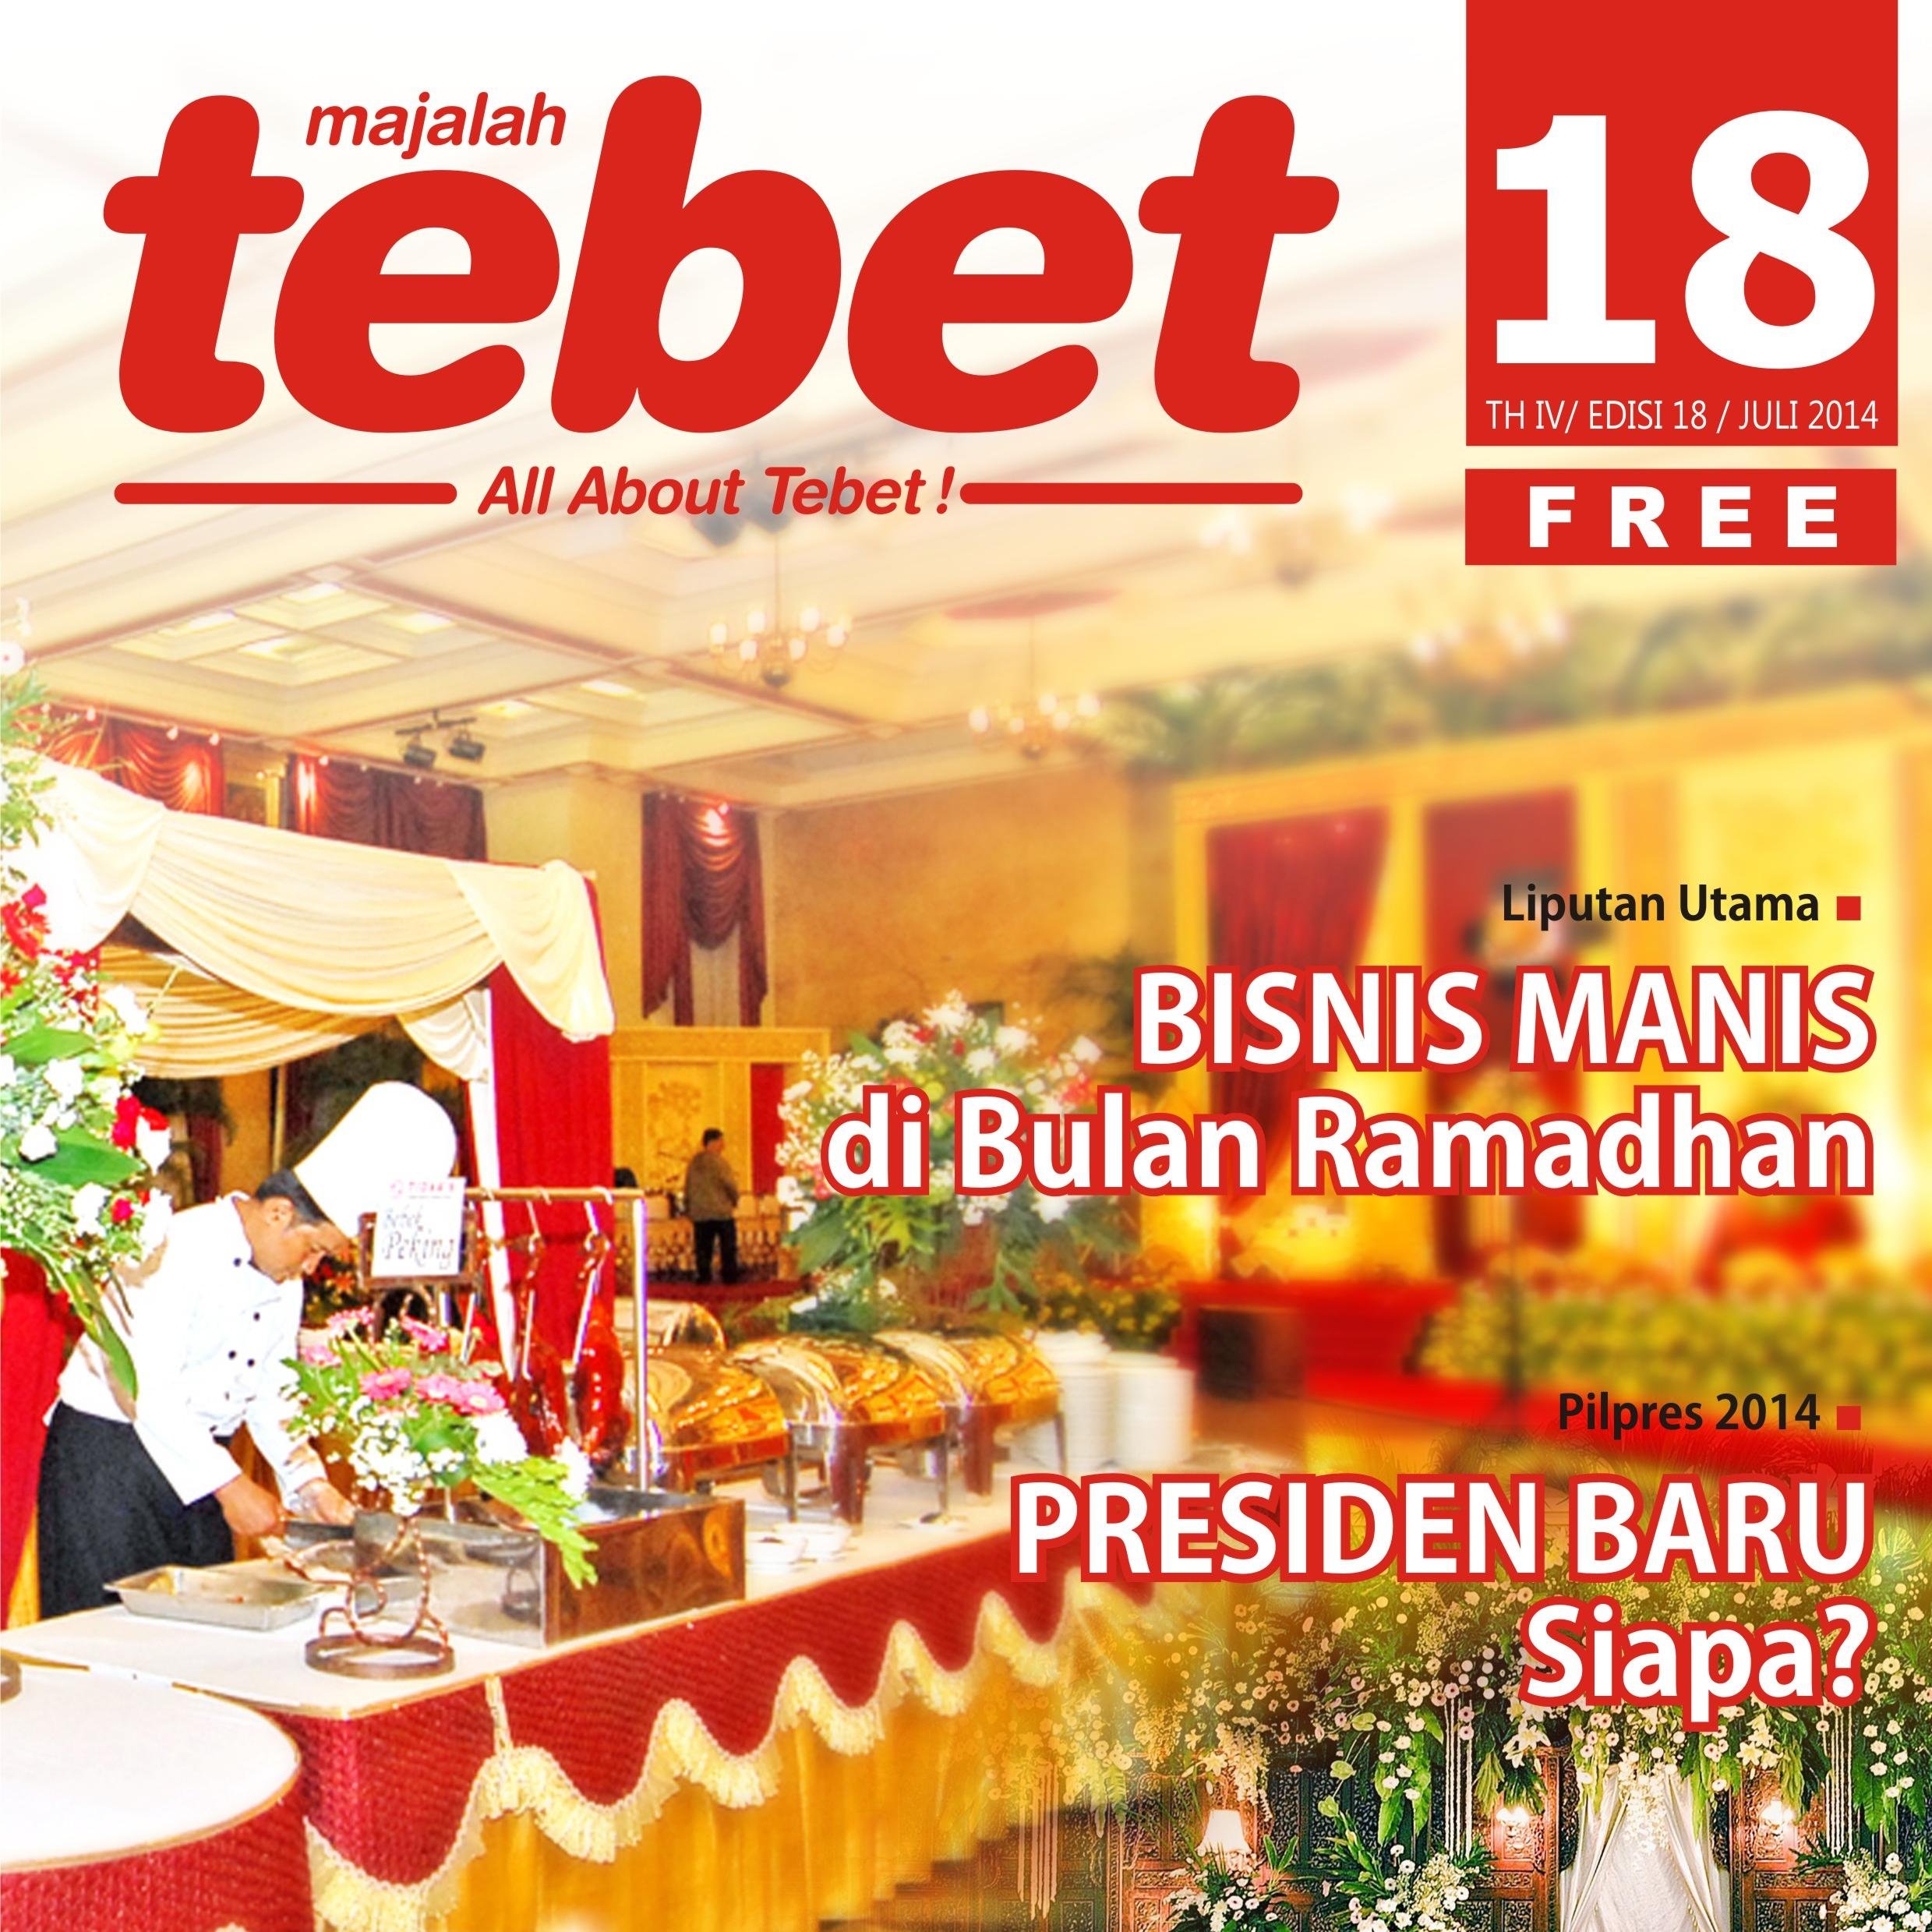 Free Magazine khusus Wilayah Tebet. Mempunyai tujuan Memajukan dan memberi infomasi seputar kawasan TEBET